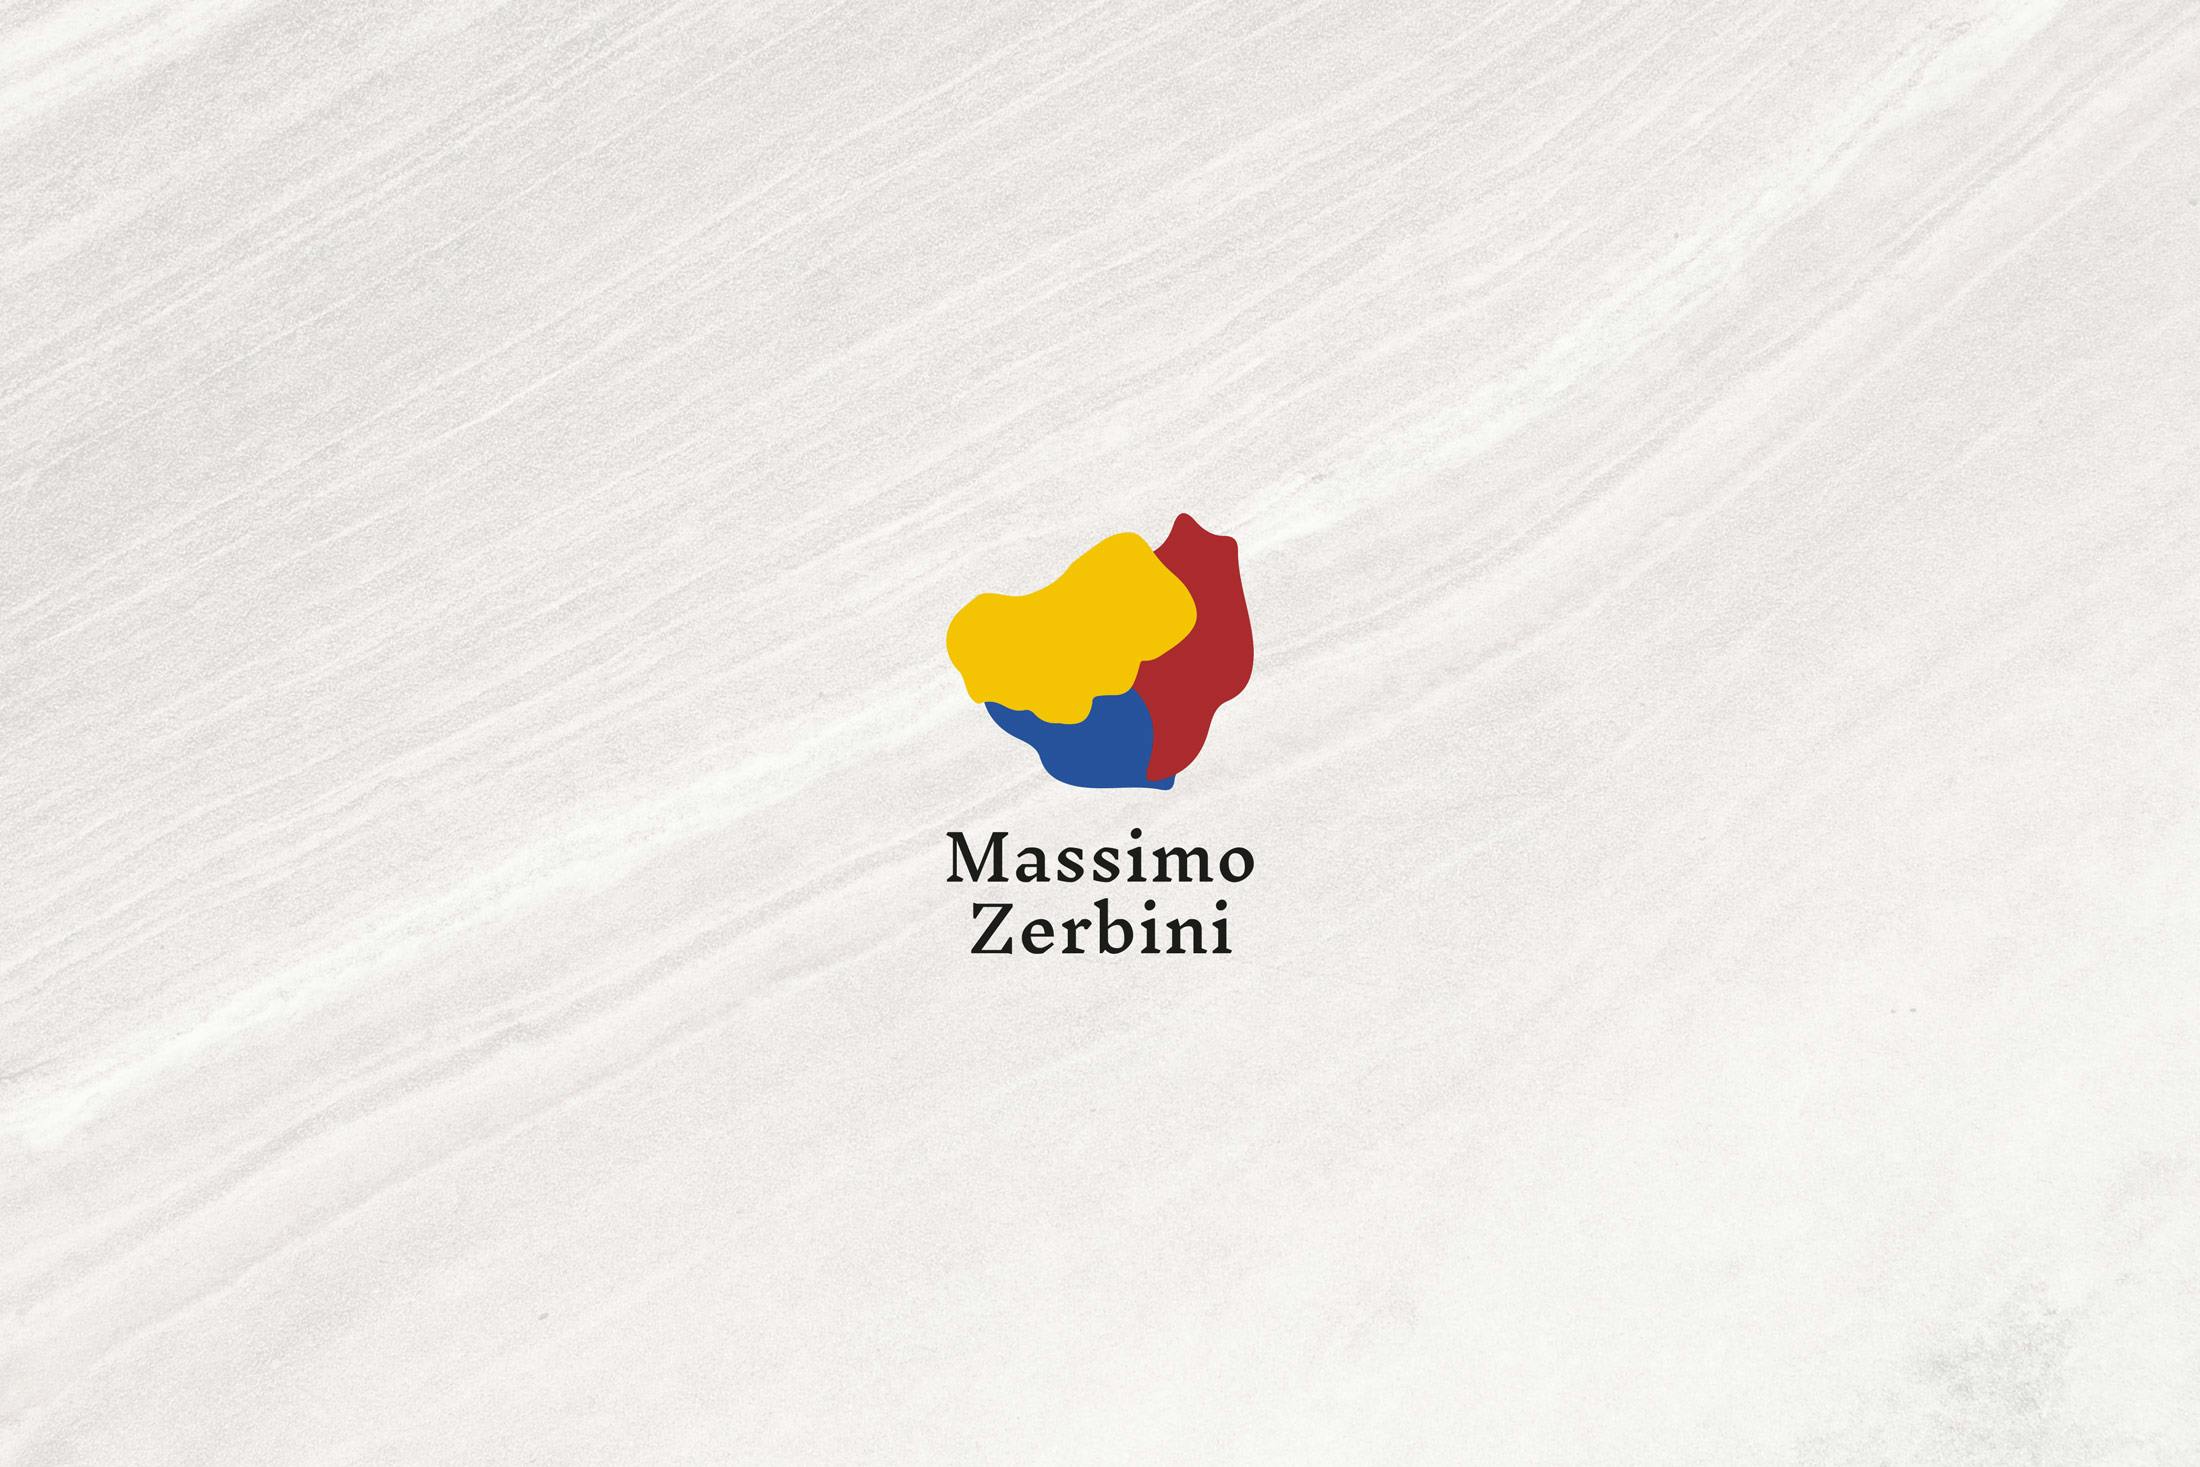 massimo-zerbini-branding-1.jpeg